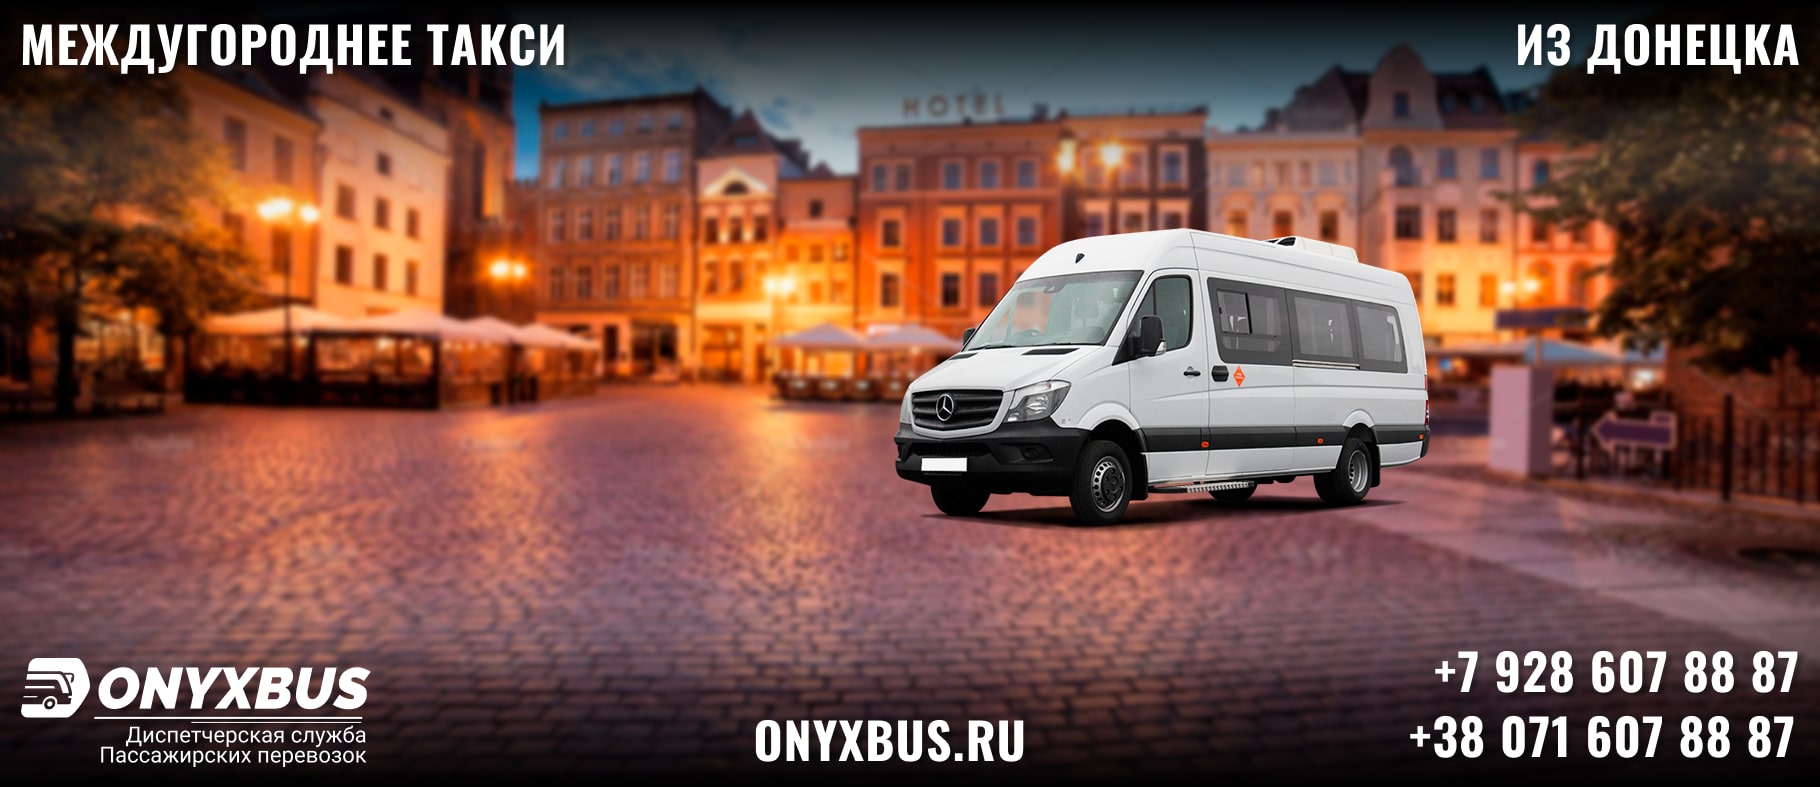 Заказ <br>Микроавтобуса Анапа - Донецк